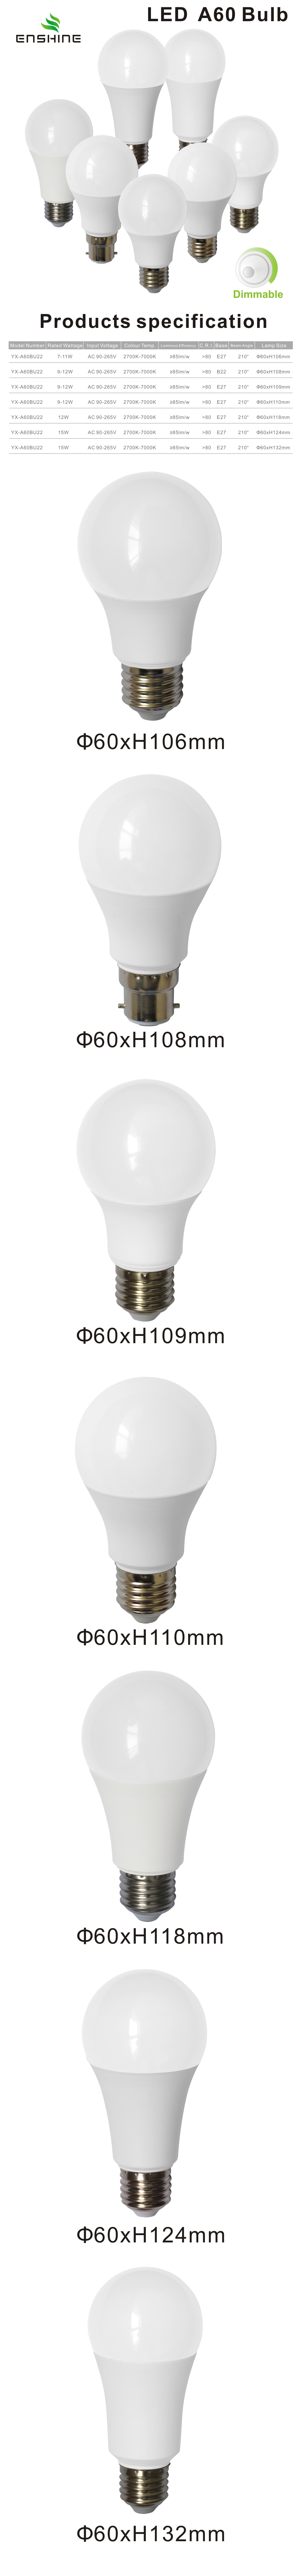 A60 LED Dimmable Bulb 7-15W YX-A60BU22 